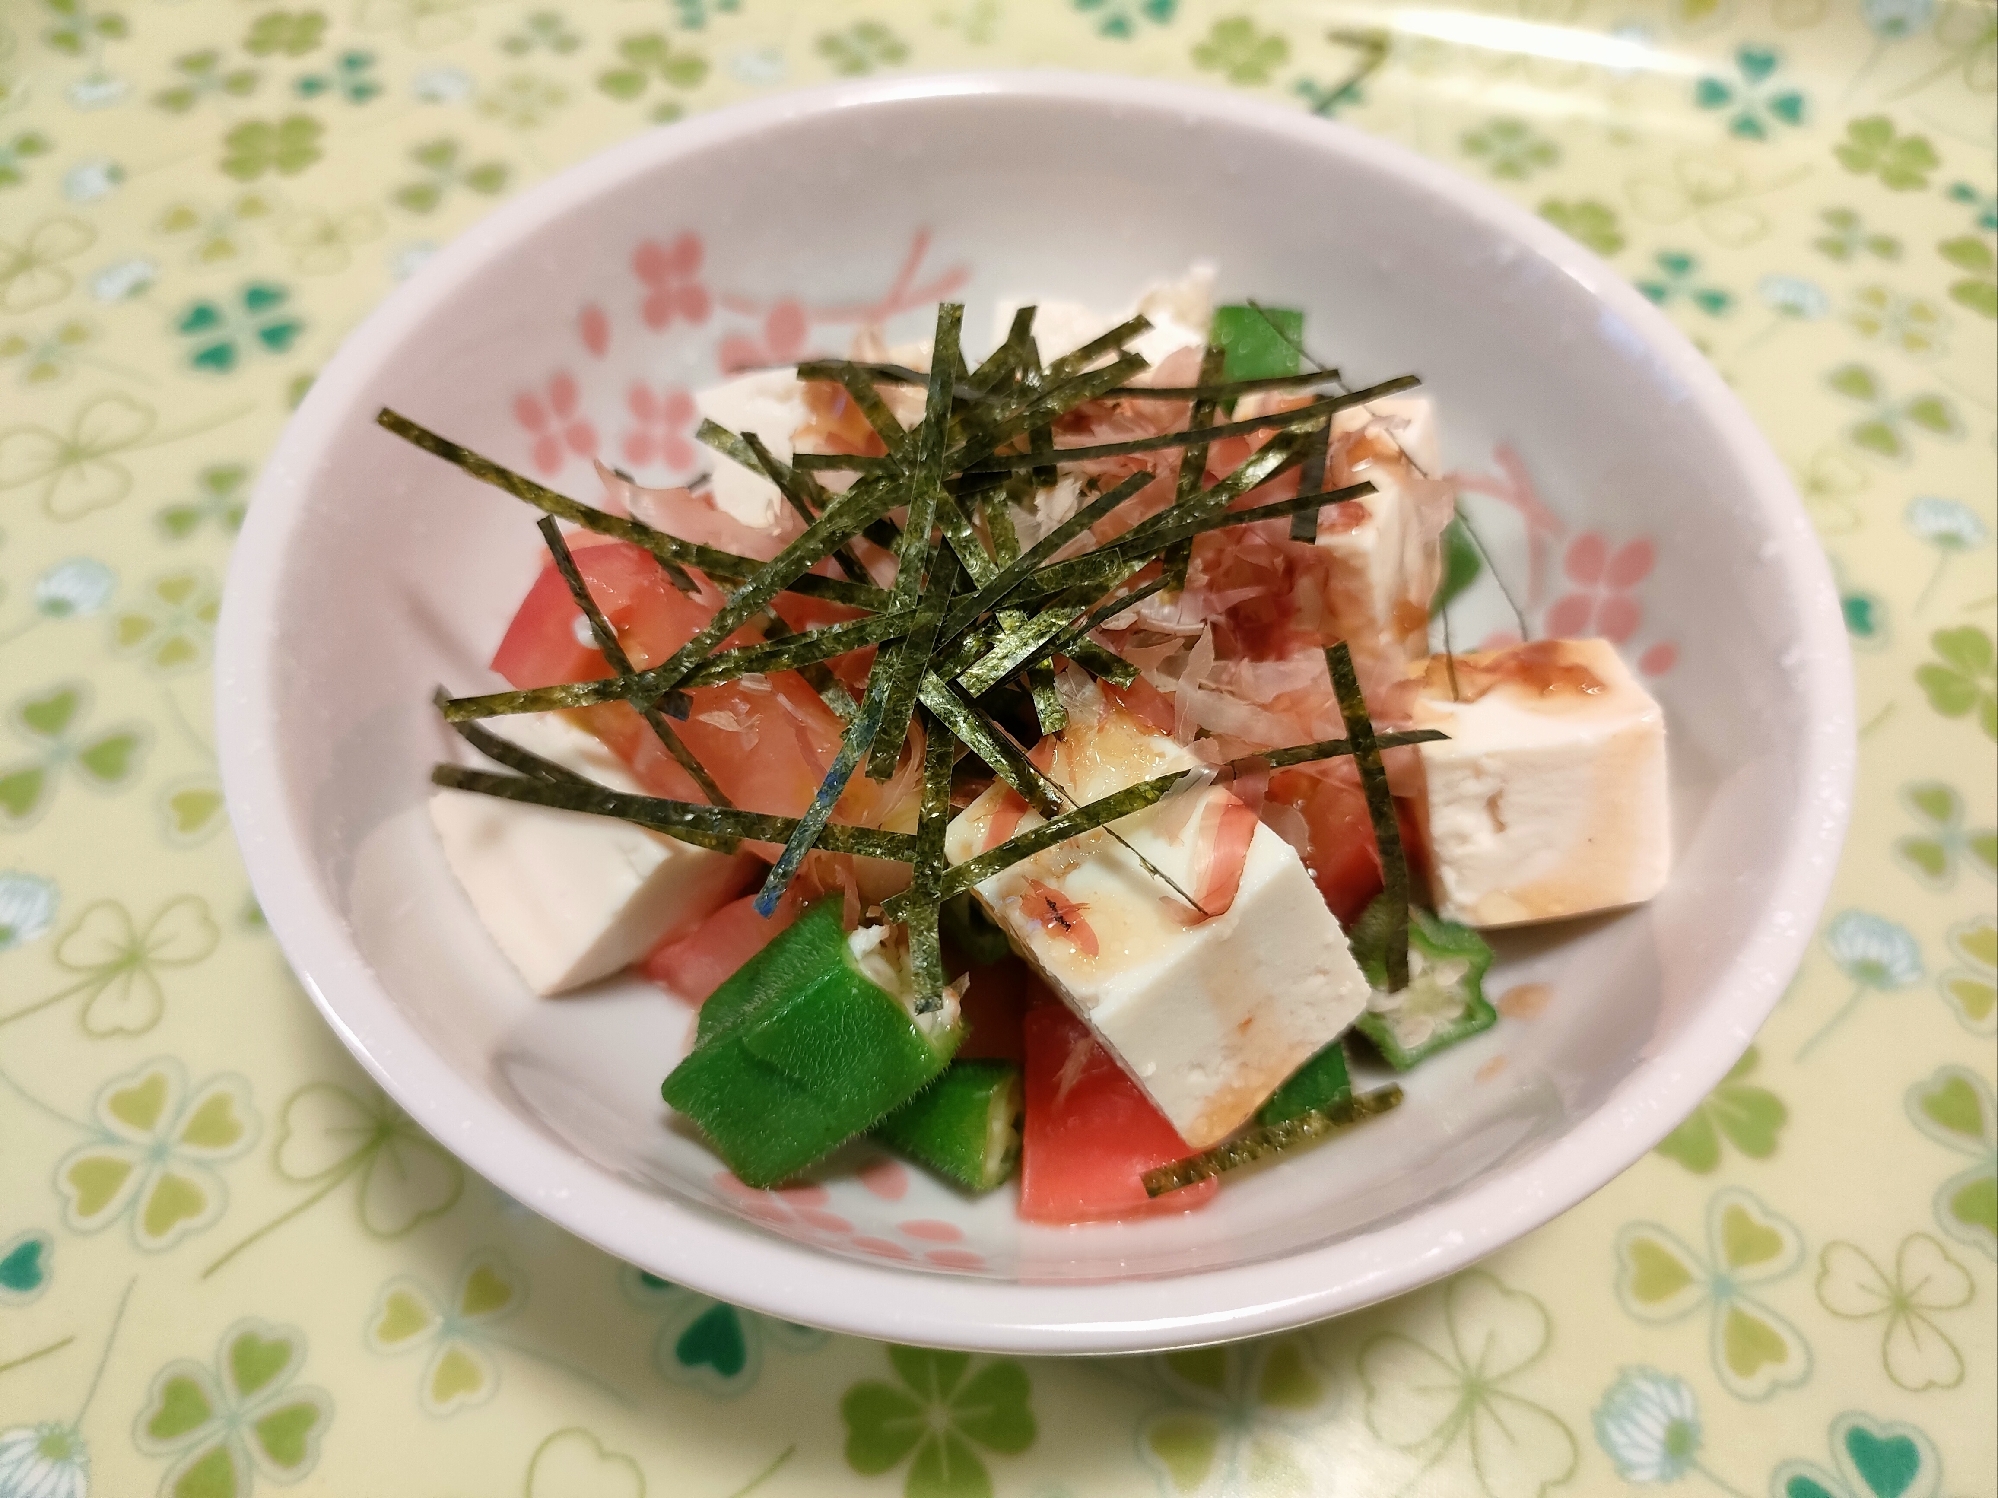 オクラと豆腐の和風サラダ